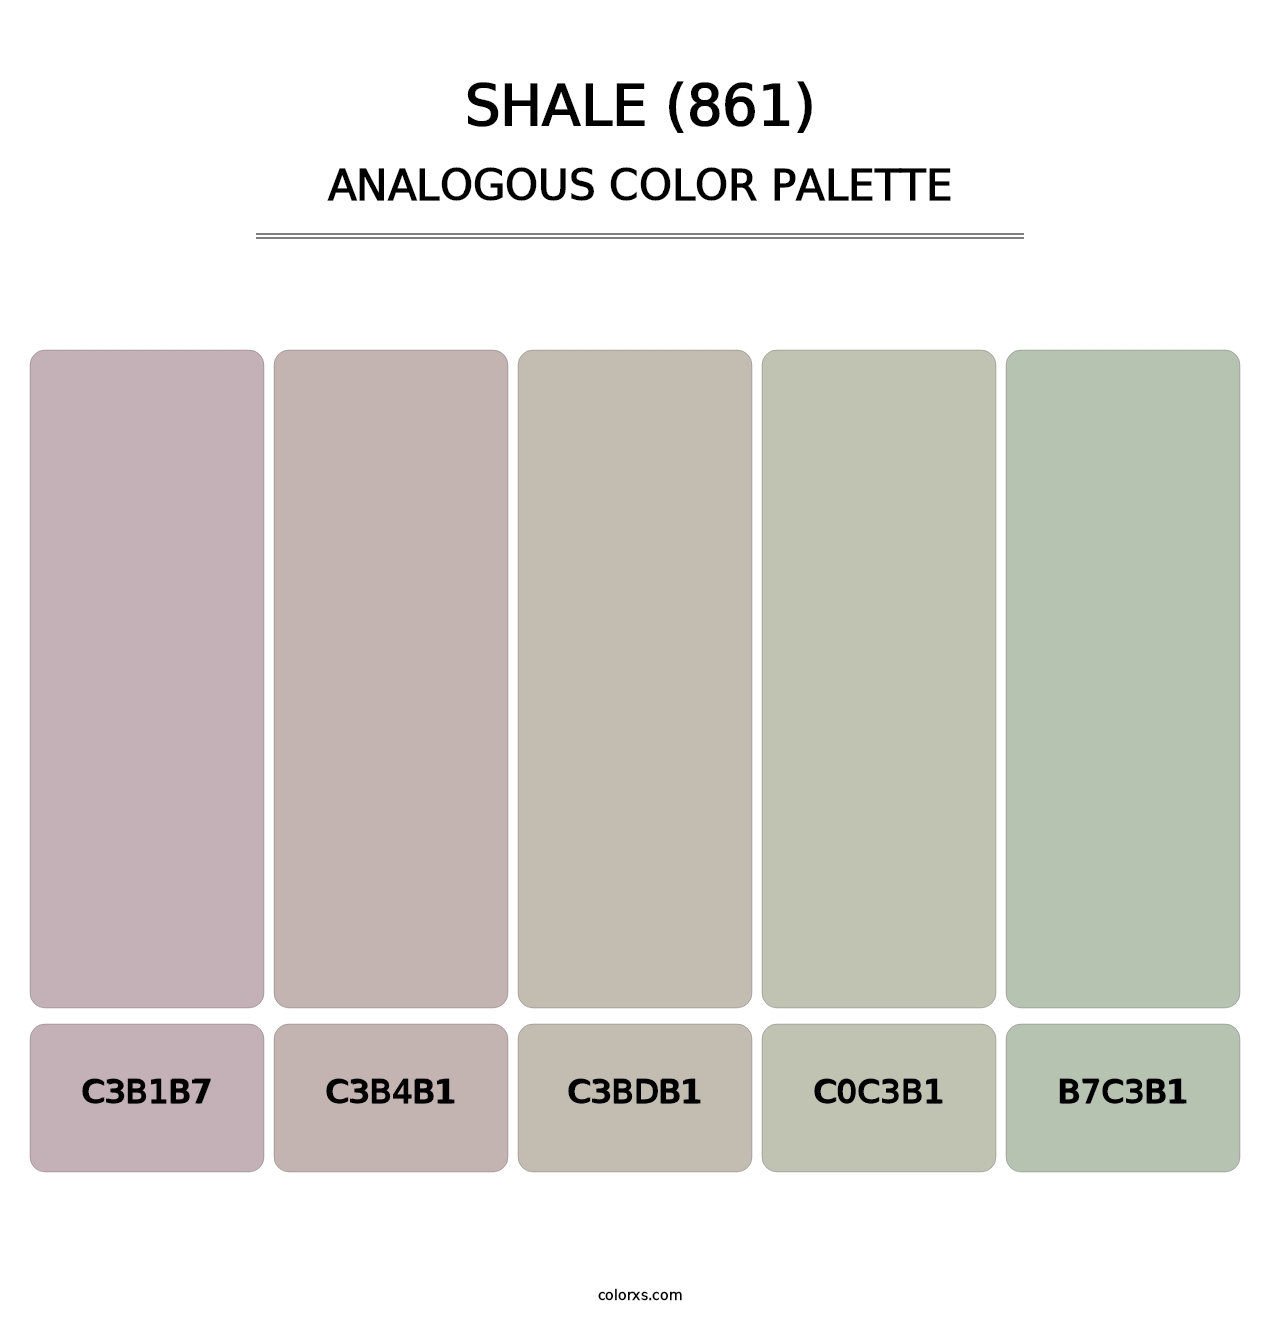 Shale (861) - Analogous Color Palette